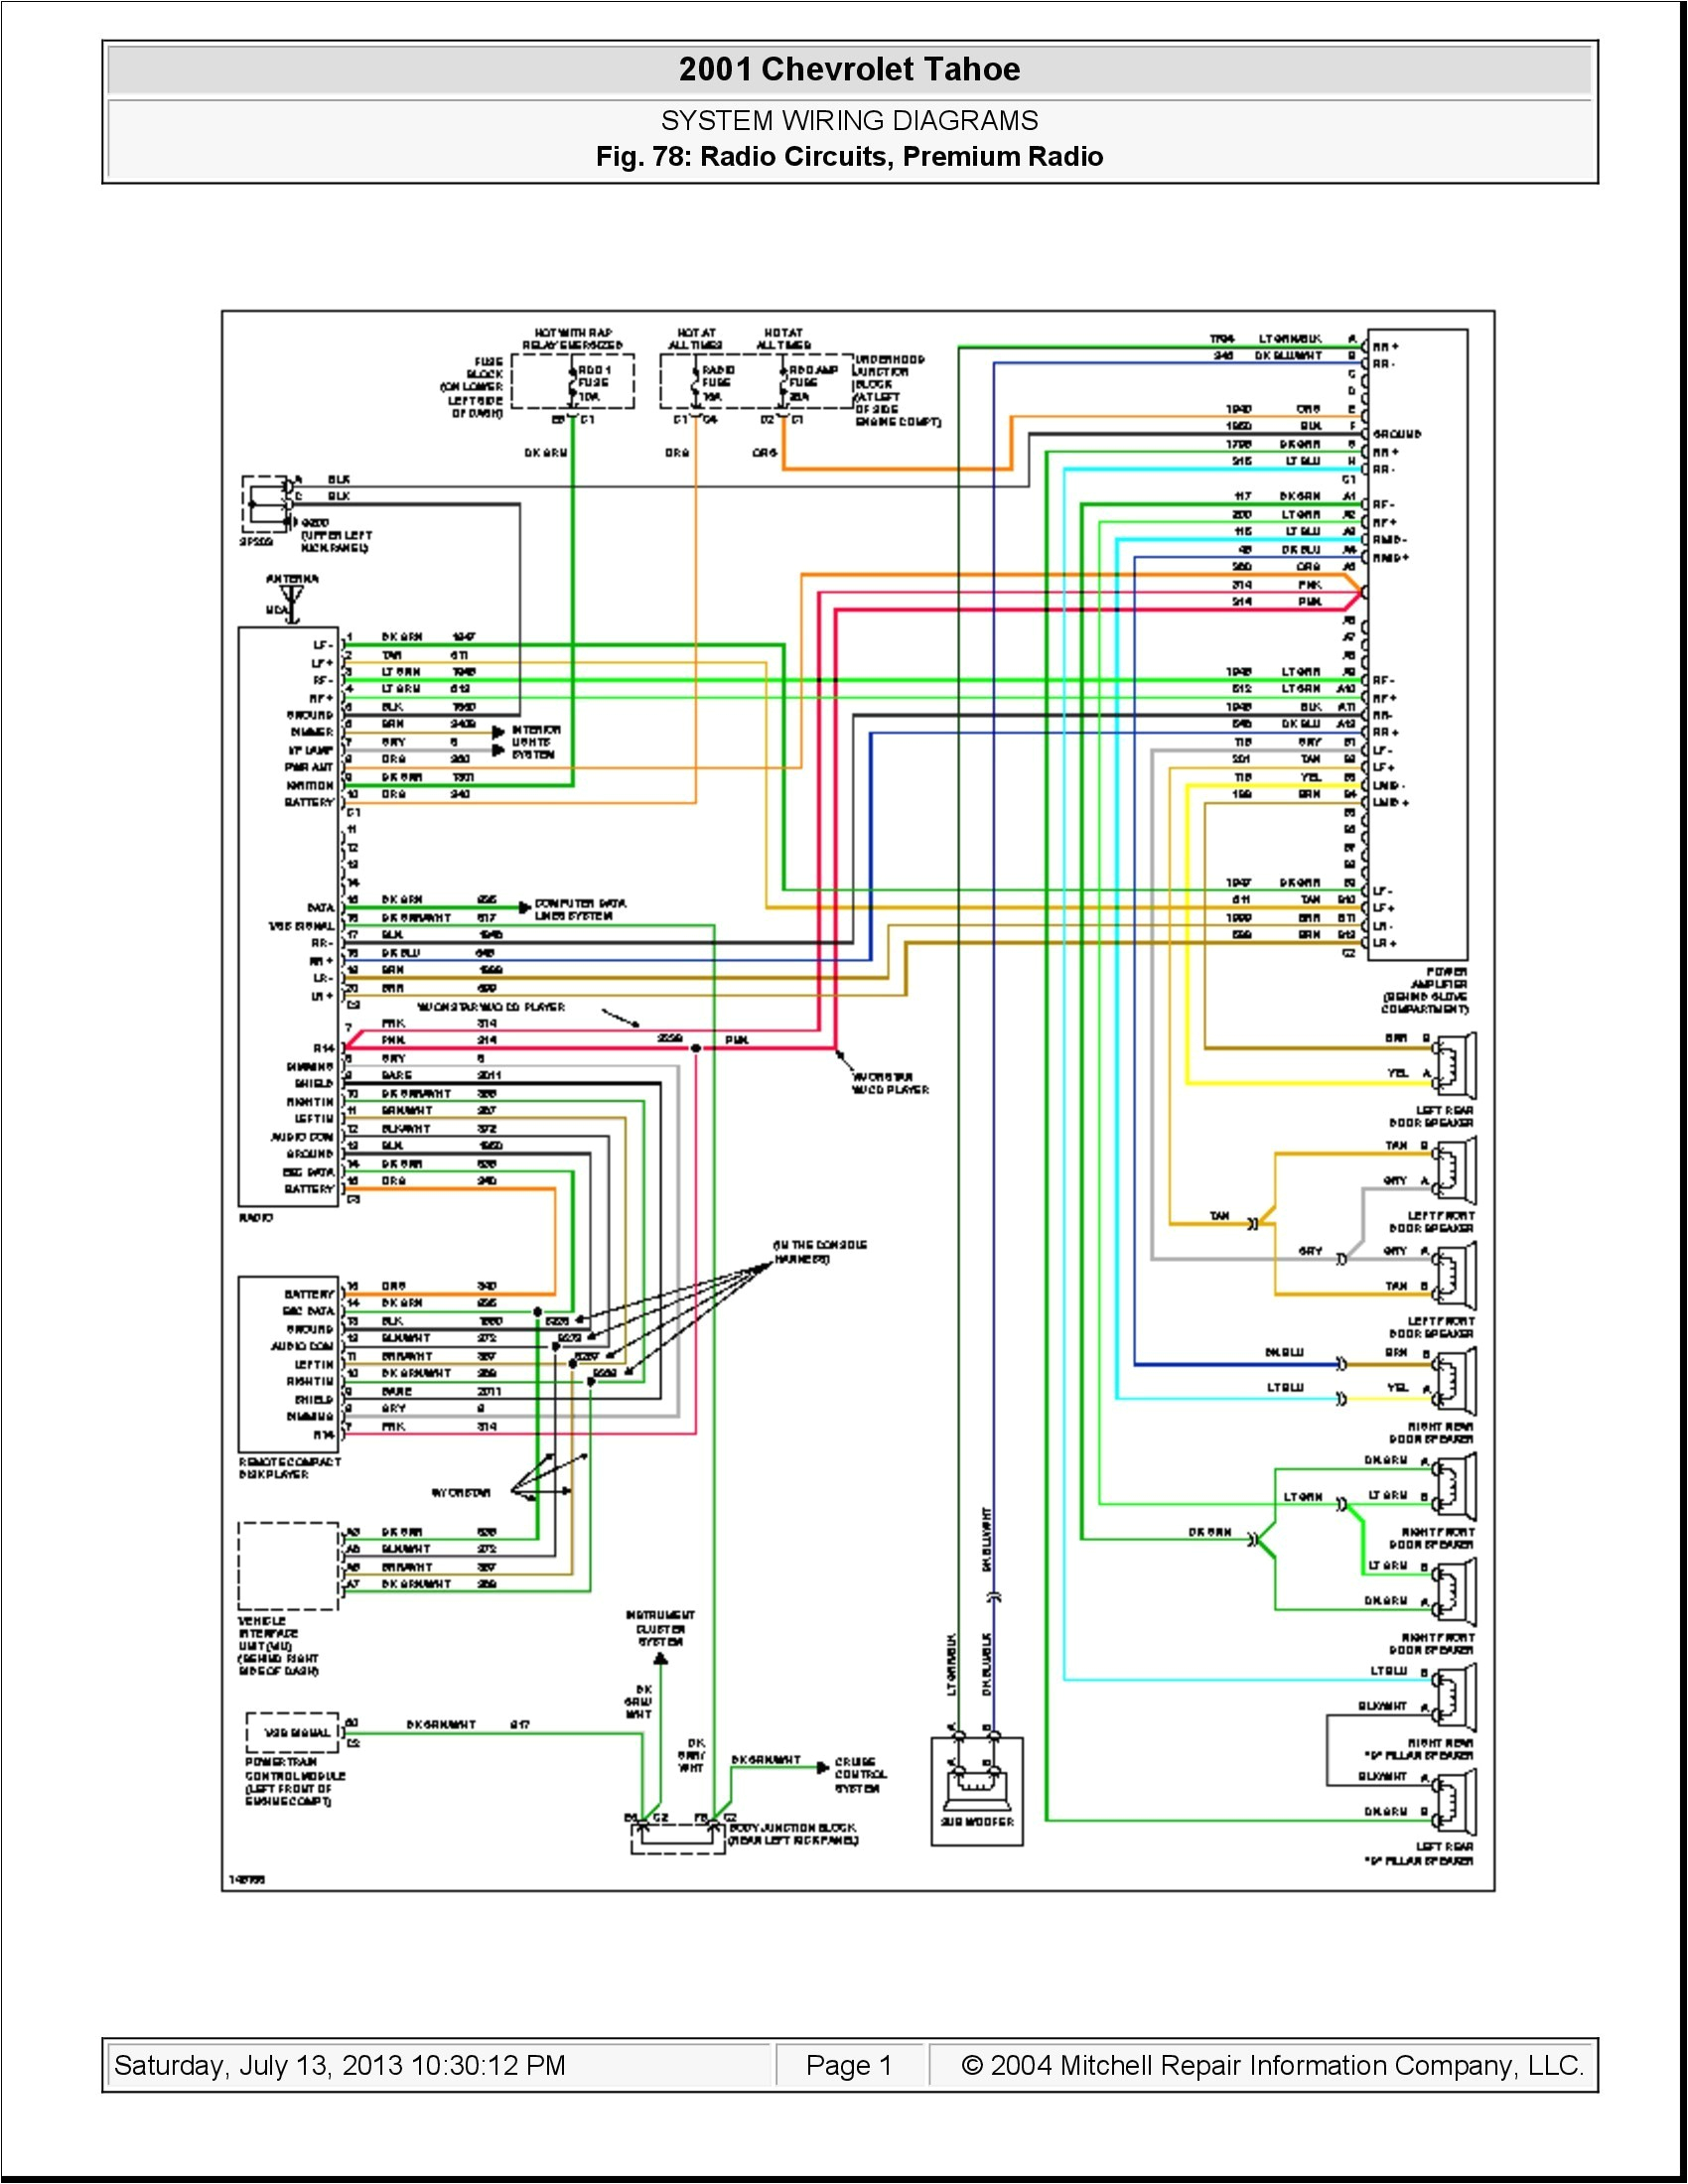 2005 impala wiring diagram electrical wiring diagram 2005 impala power window wiring diagram 2005 impala wiring diagram